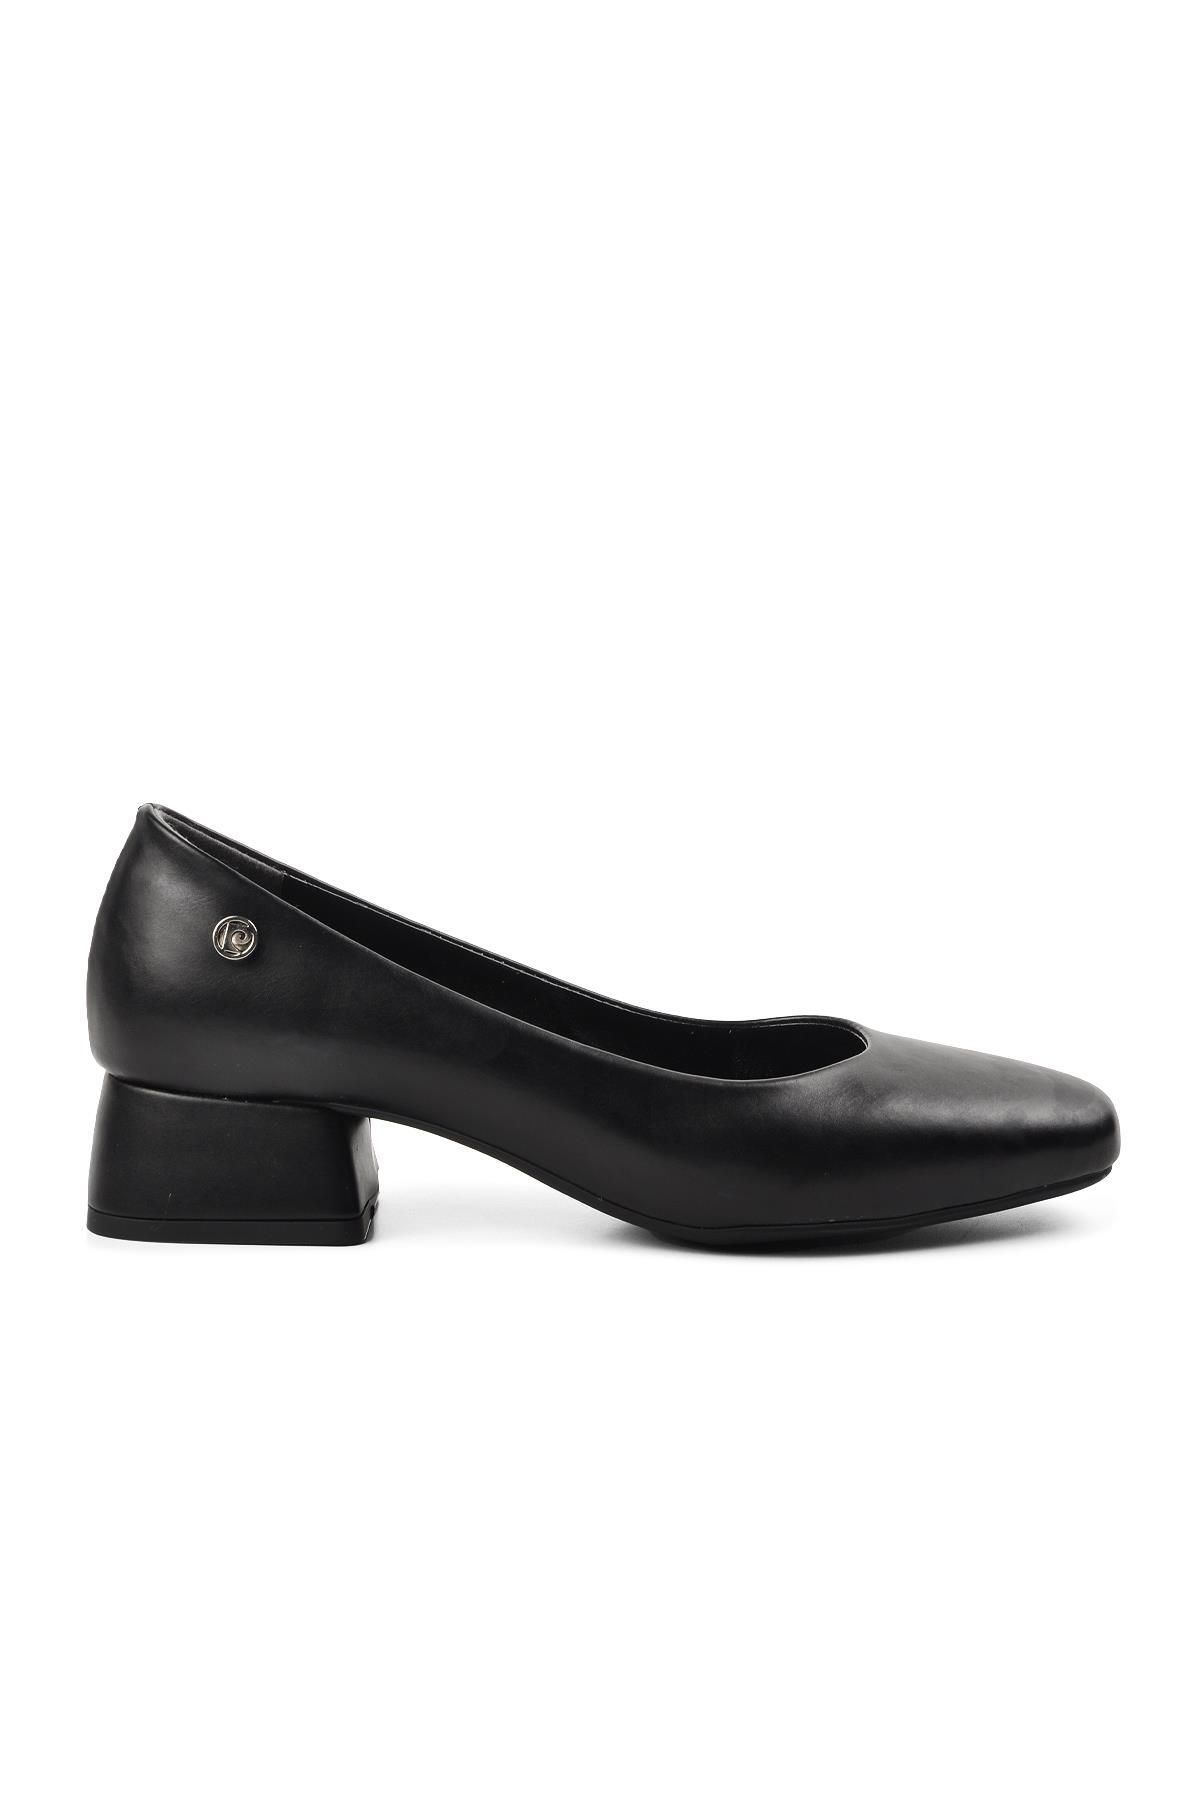 Pierre Cardin Pc-52276 Siyah Kadın Topuklu Ayakkabı